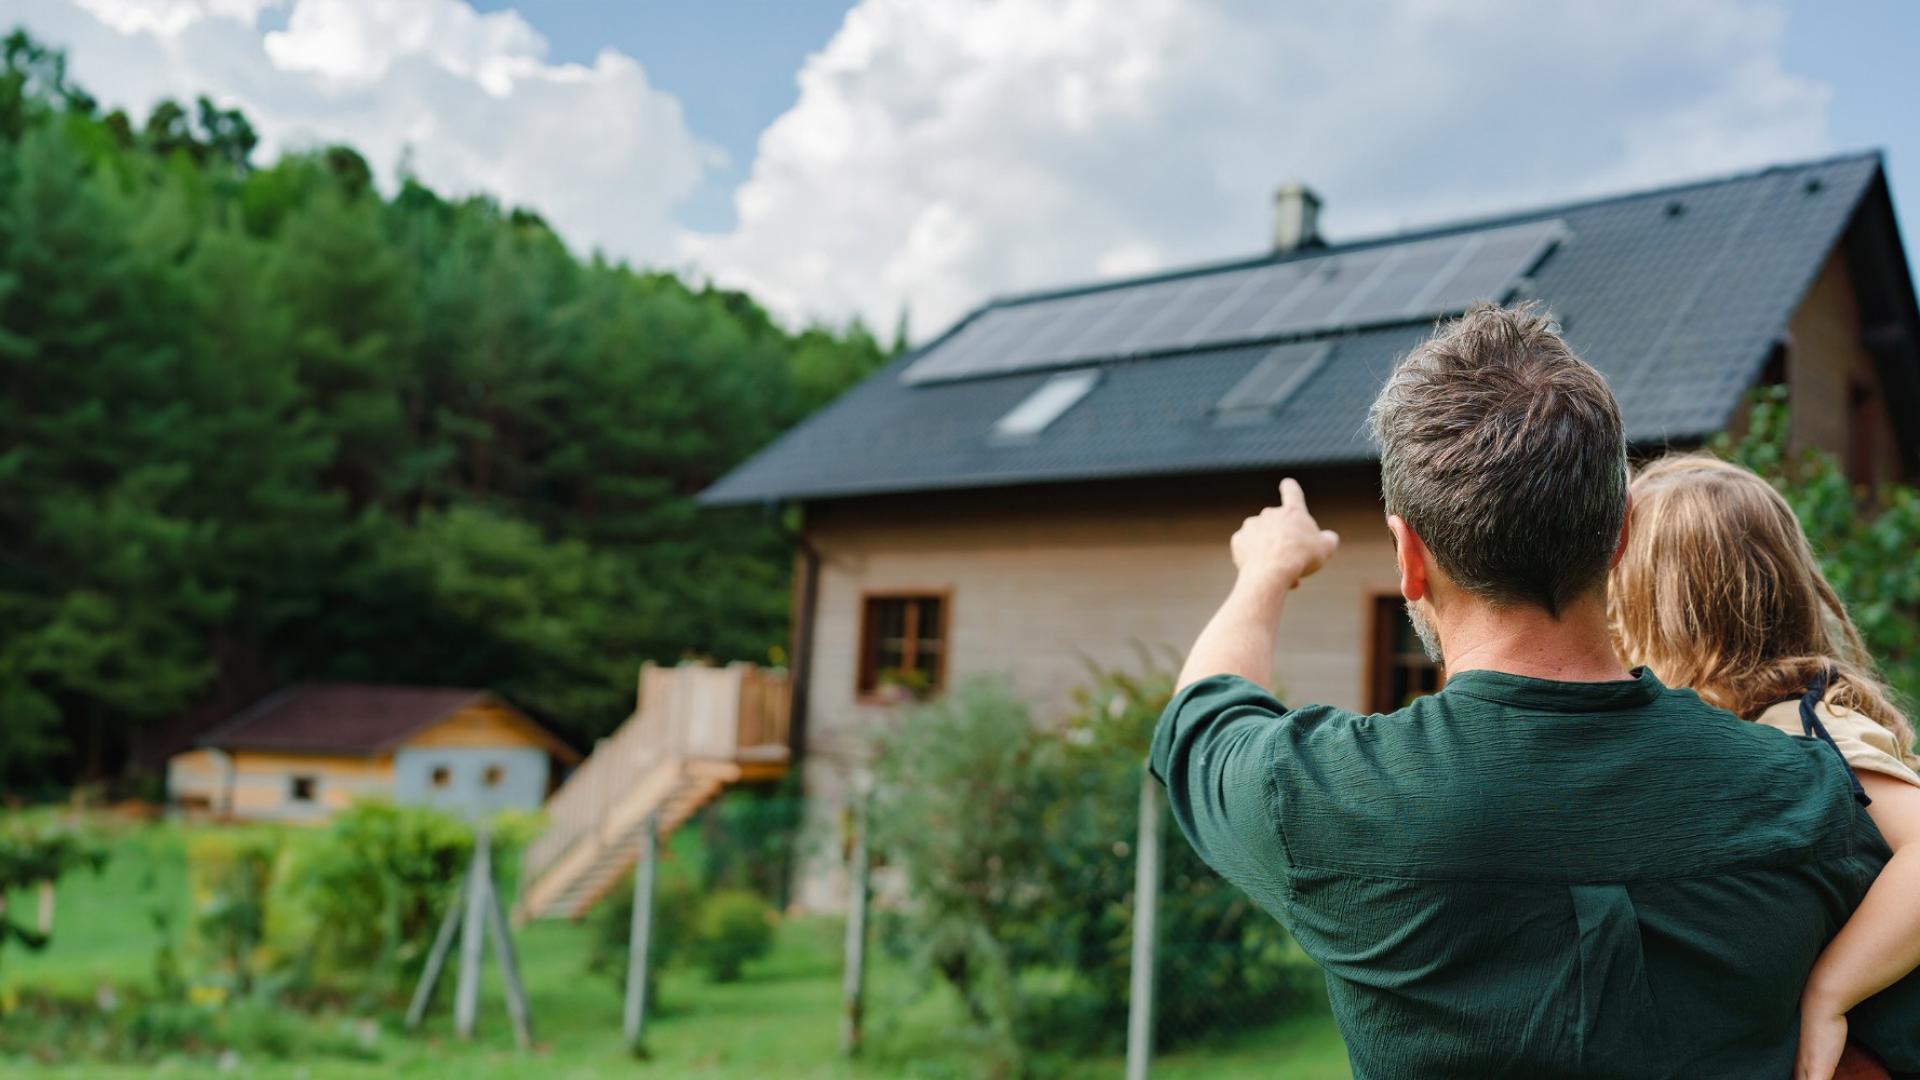 Auf dem Bild ist ein Mann auf einem Dach abgebildet, der eine Photovoltaikanlage installiert.